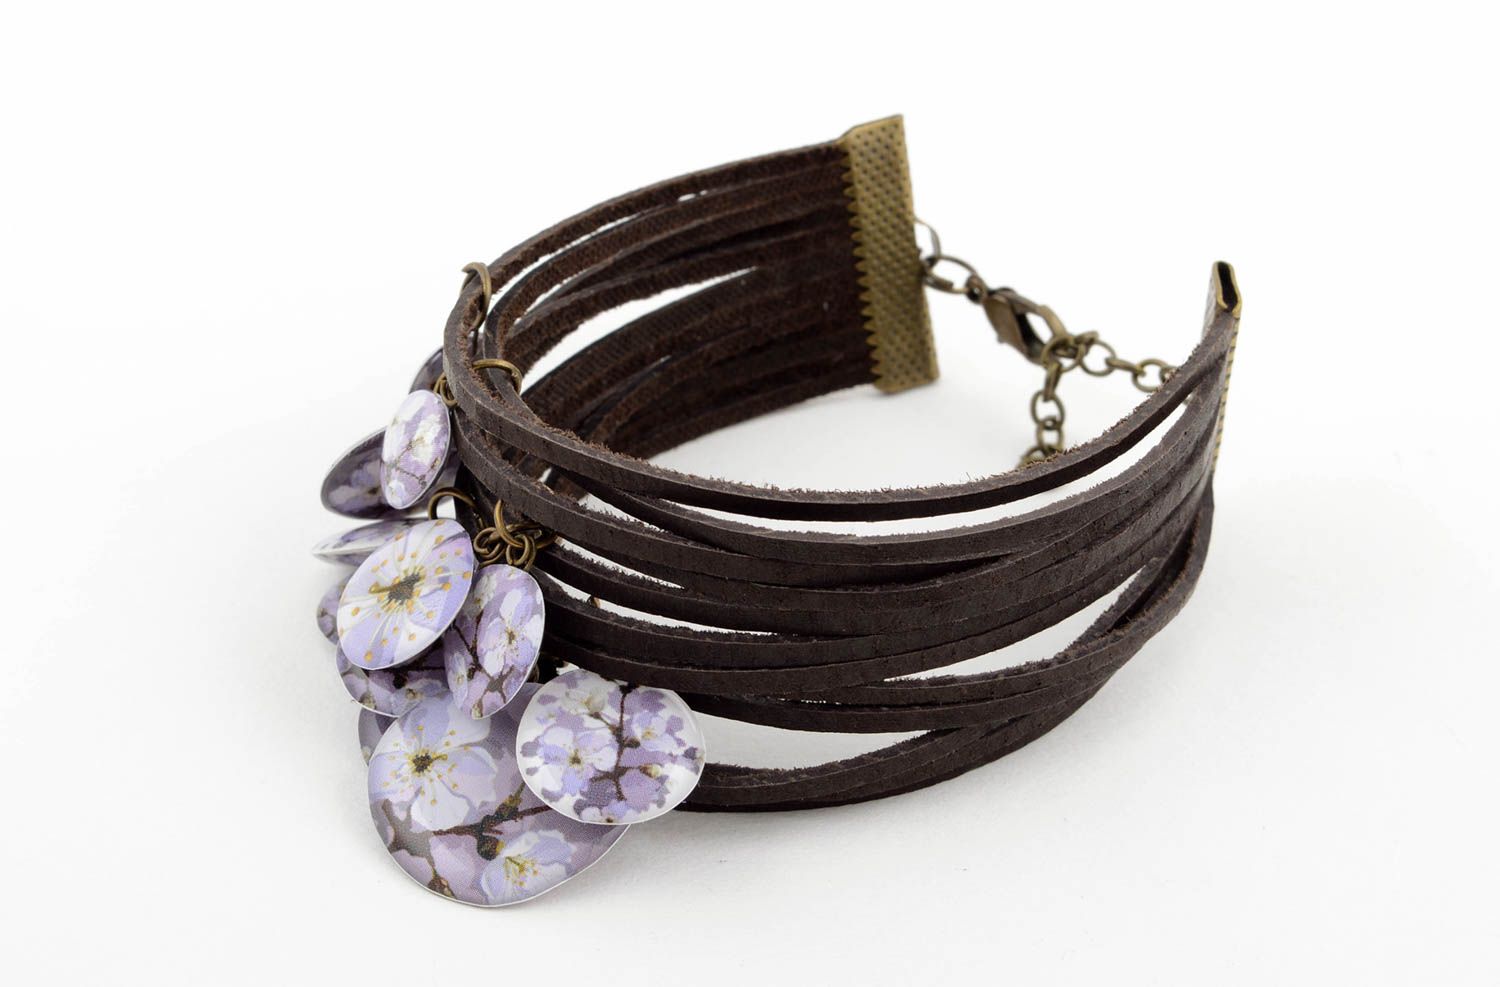 Stylish handmade leather bracelet leather cord bracelet fashion trends photo 2